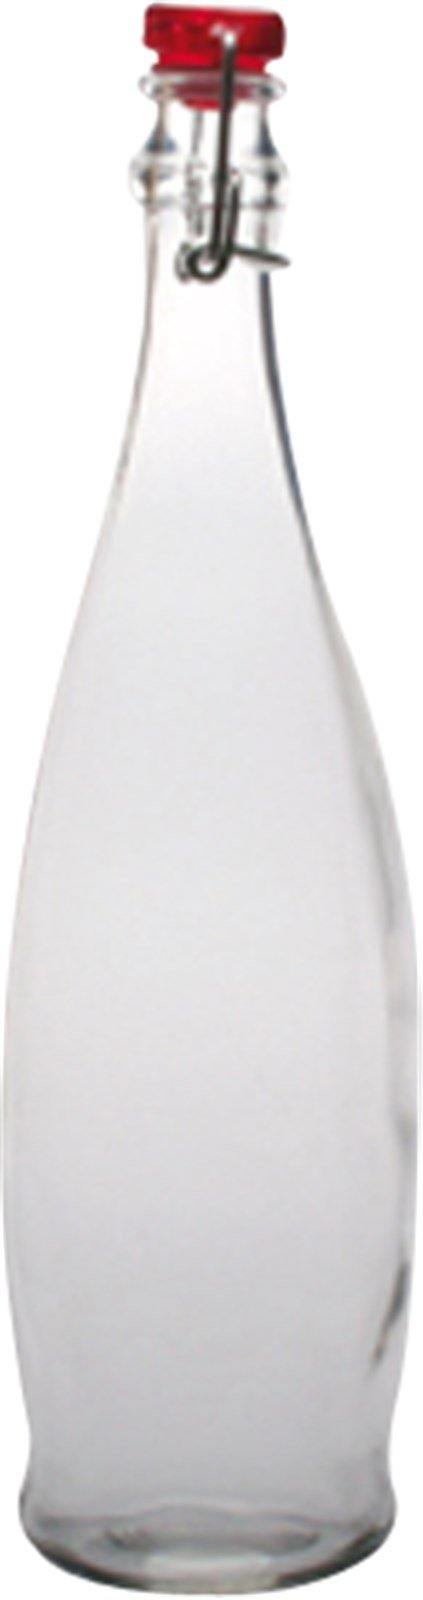 Indro Saftflasche 1 lt. 34cm - MyLiving24